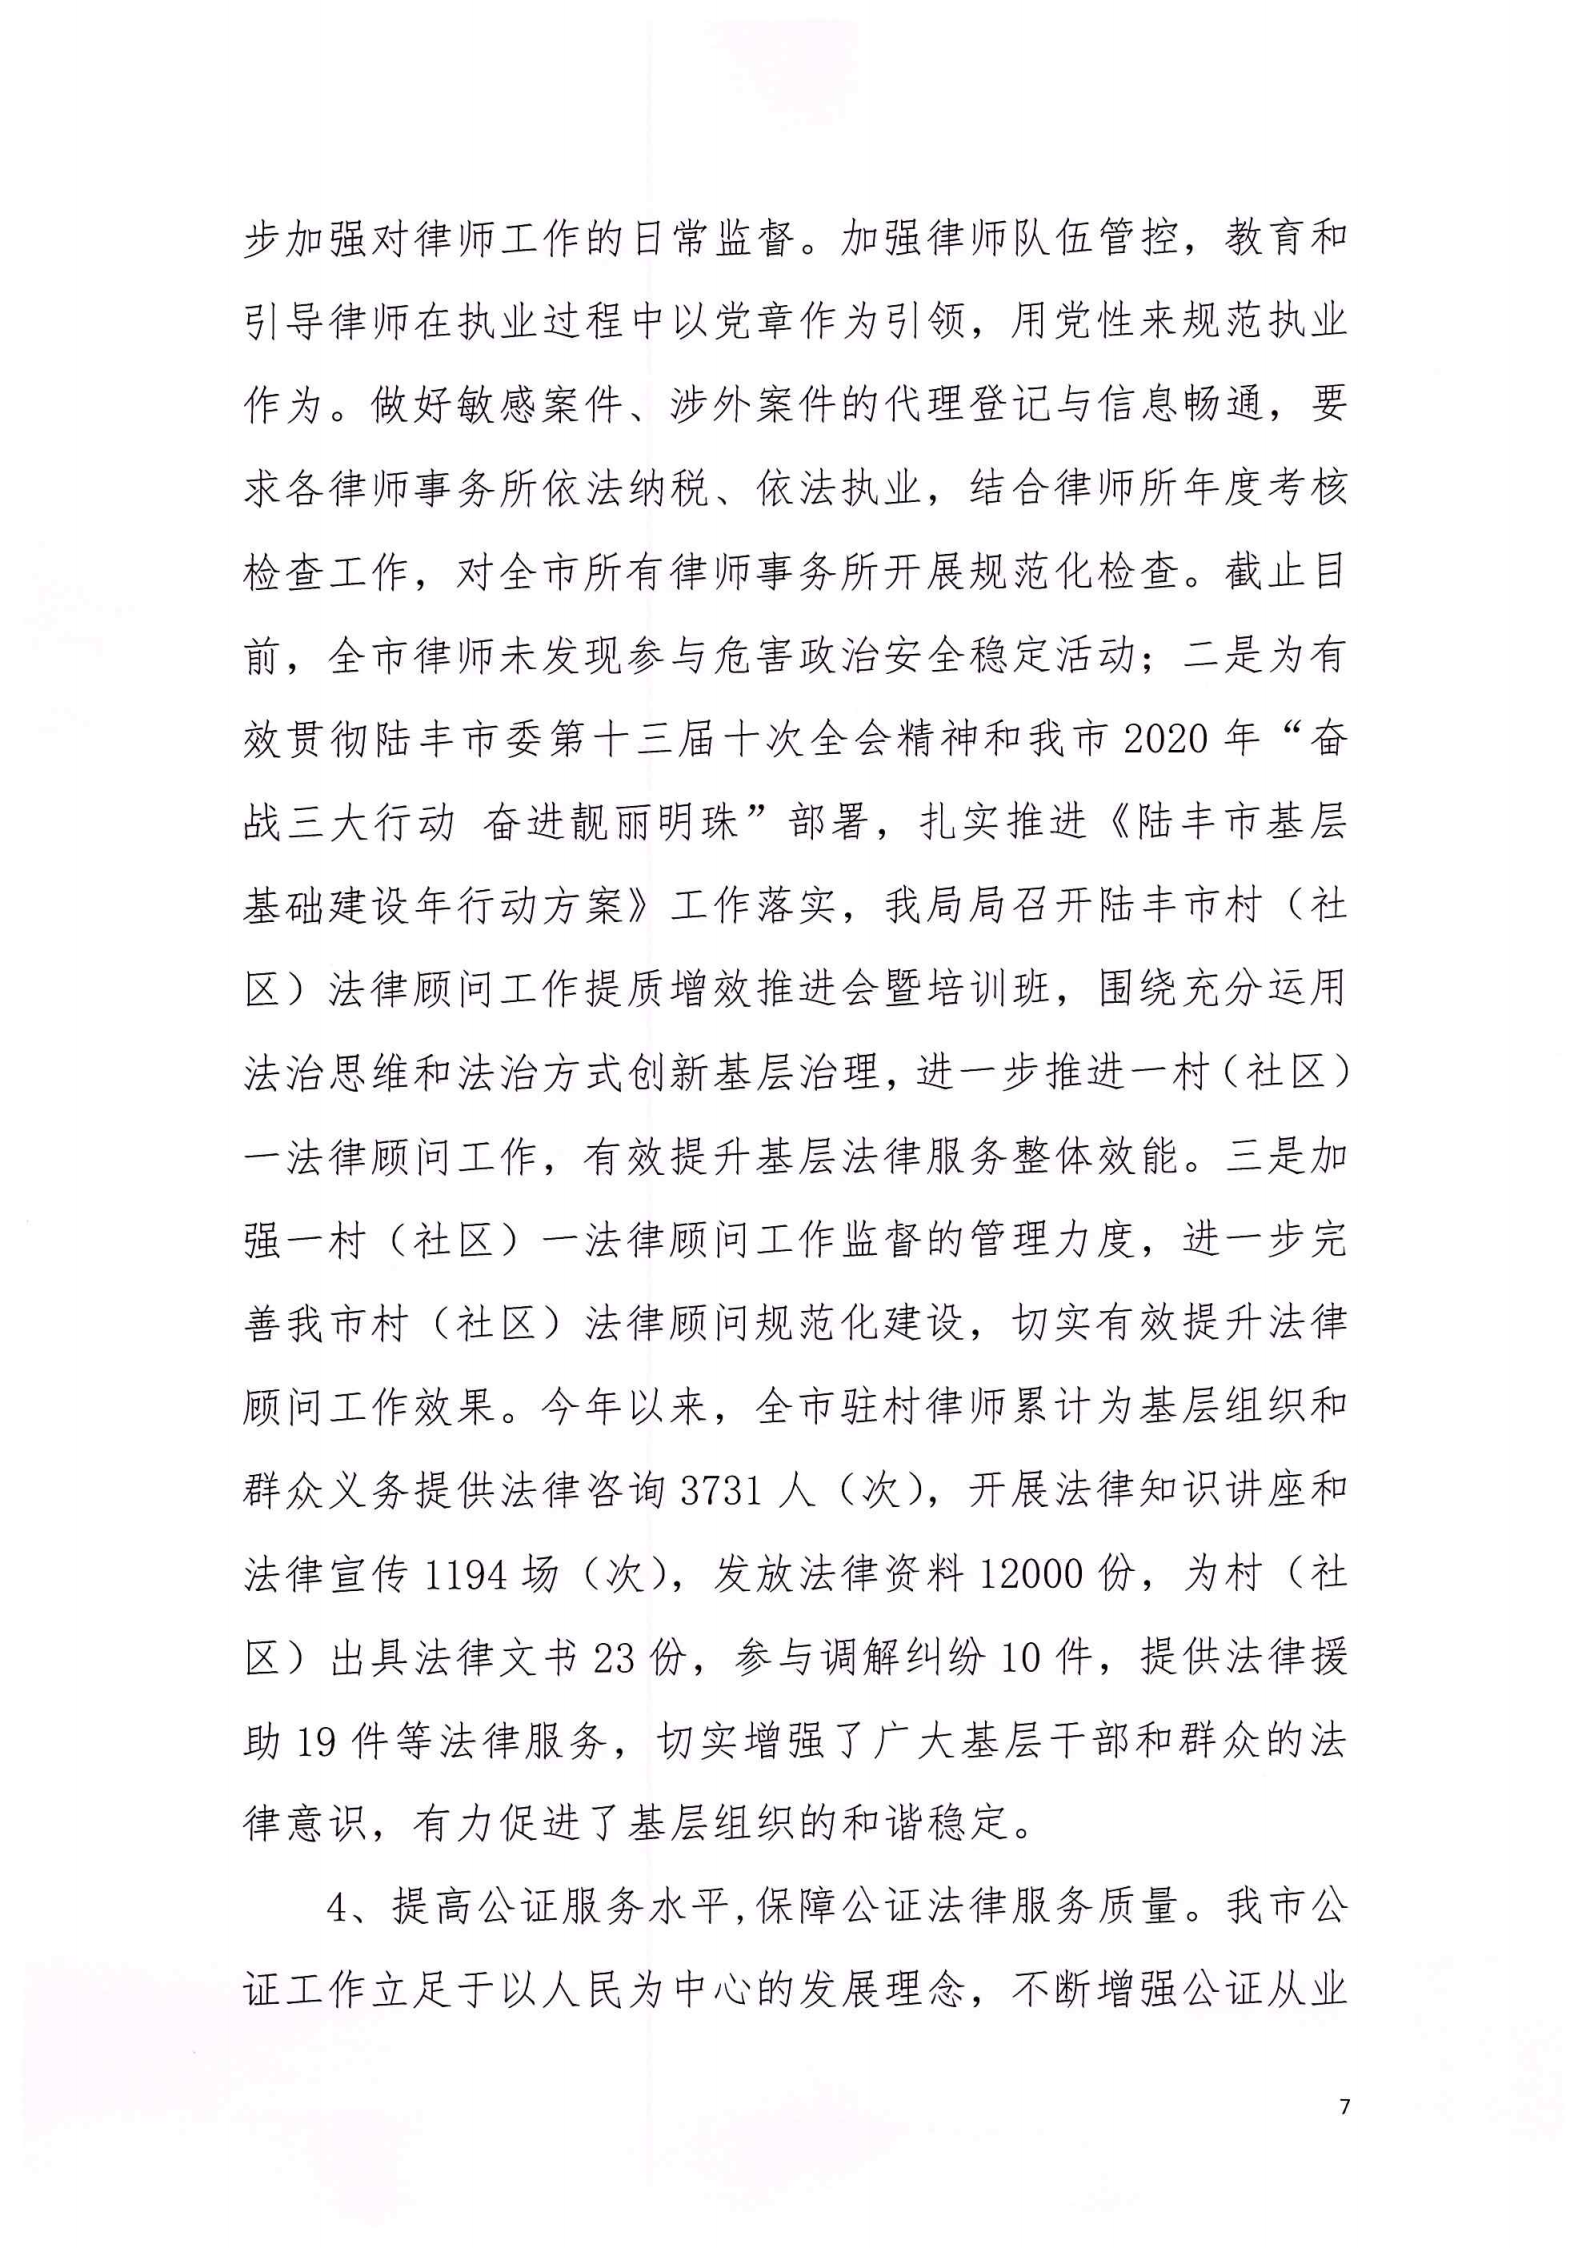 陆丰市司法局2020年法治政府建设年度报告_06.png